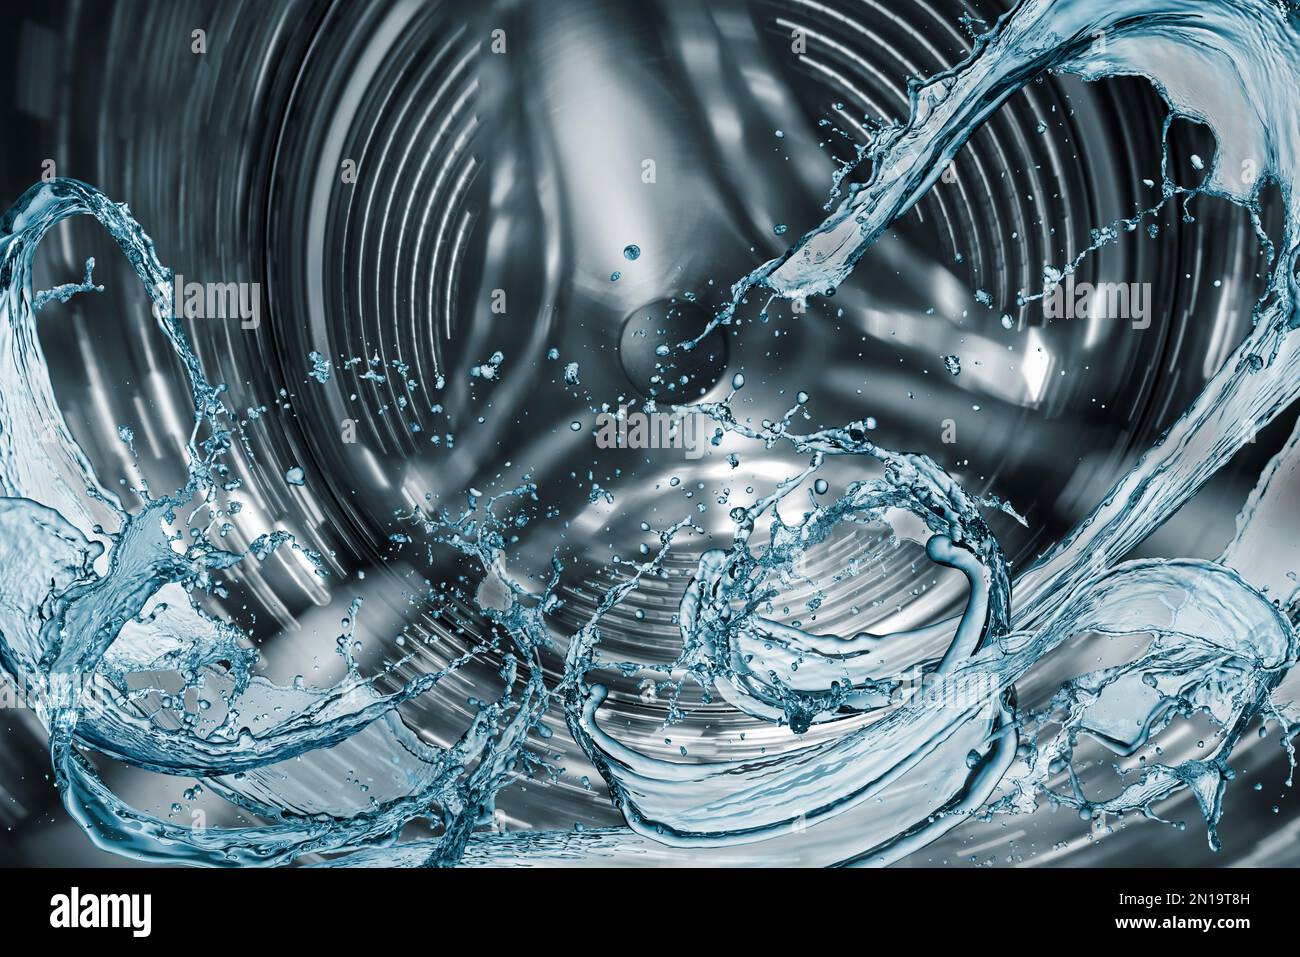 Waschmaschinentrommel mit Spritzwasser. Stockfoto